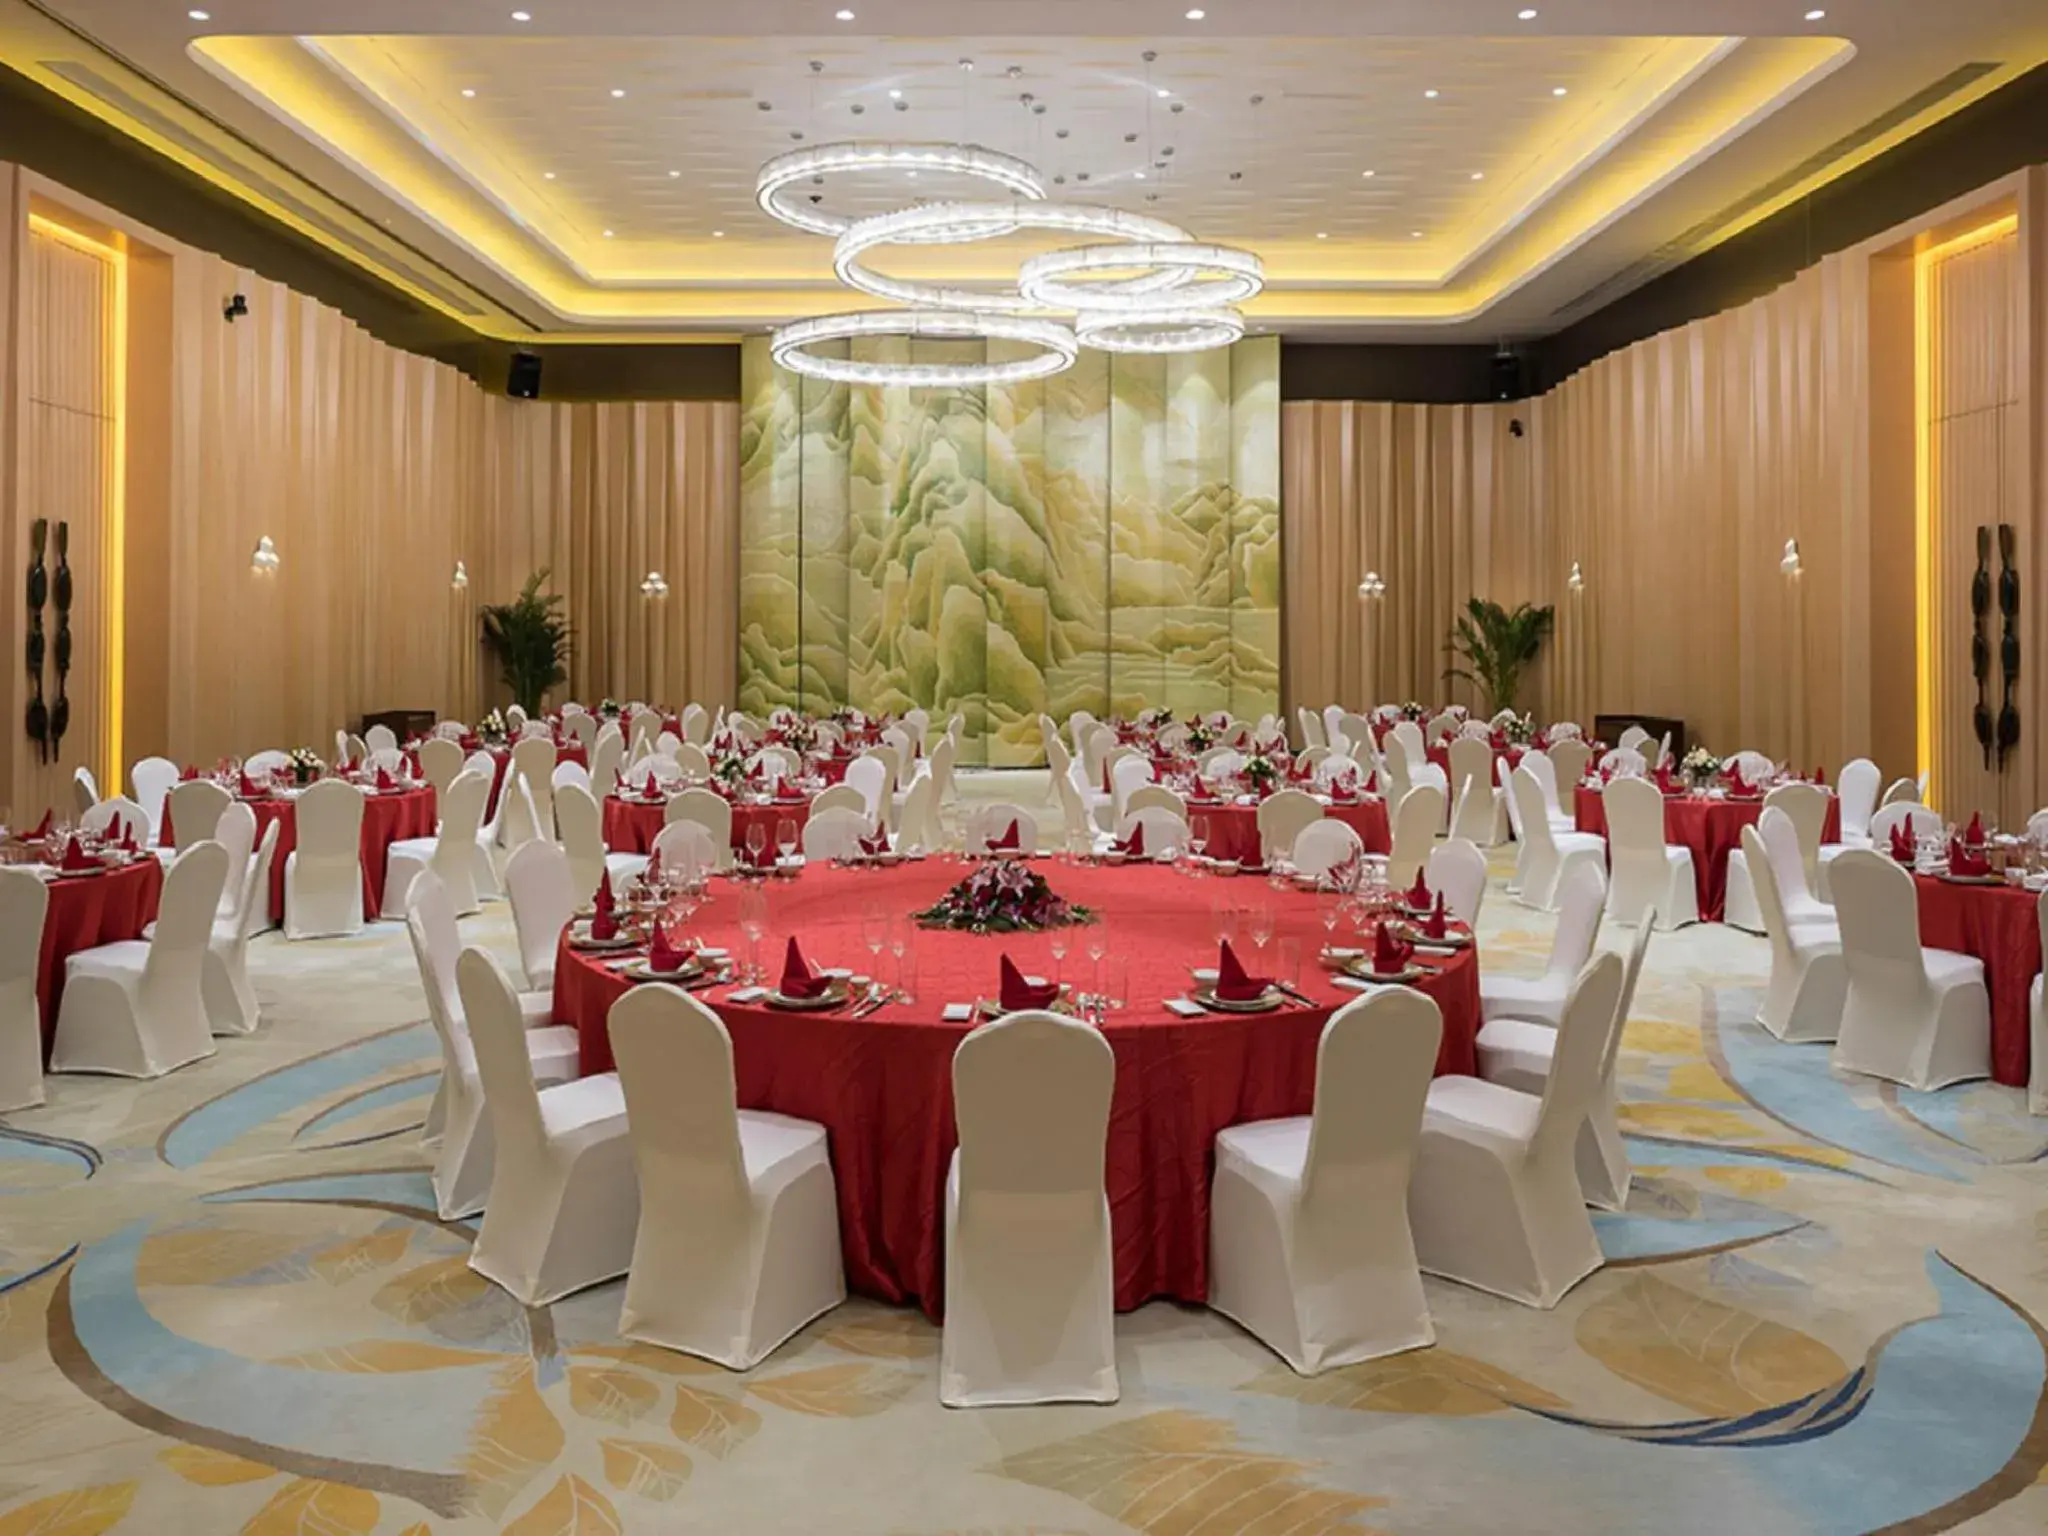 Banquet/Function facilities, Banquet Facilities in Novotel Suzhou Sip